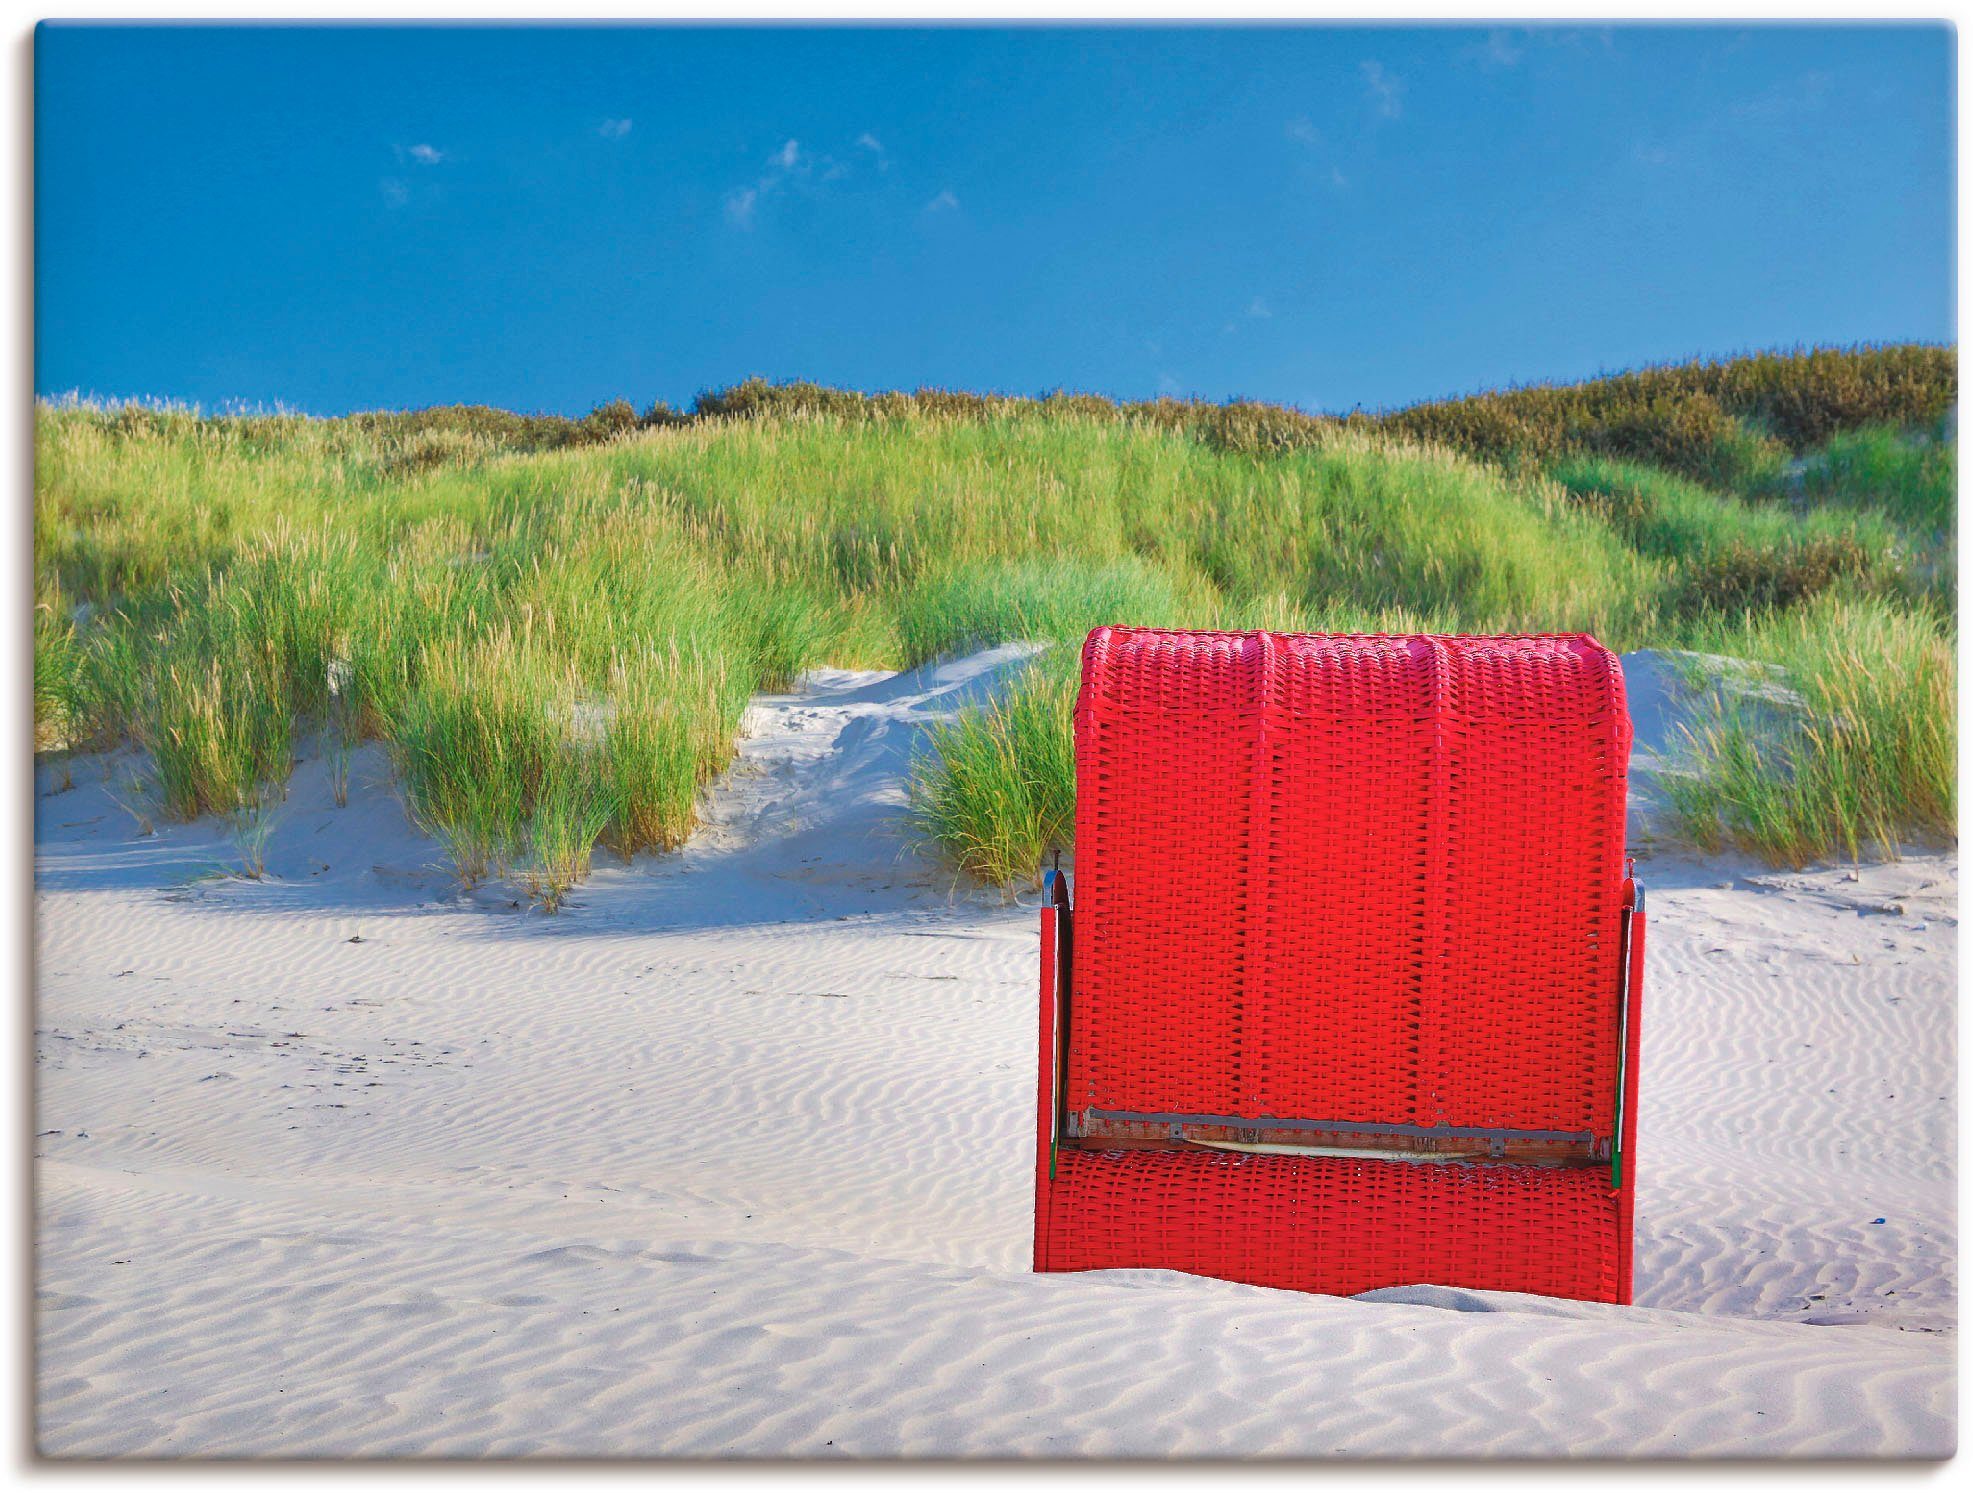 Artland Artprint Rode strandstoel in vele afmetingen & productsoorten -artprint op linnen, poster, muursticker / wandfolie ook geschikt voor de badkamer (1 stuk)